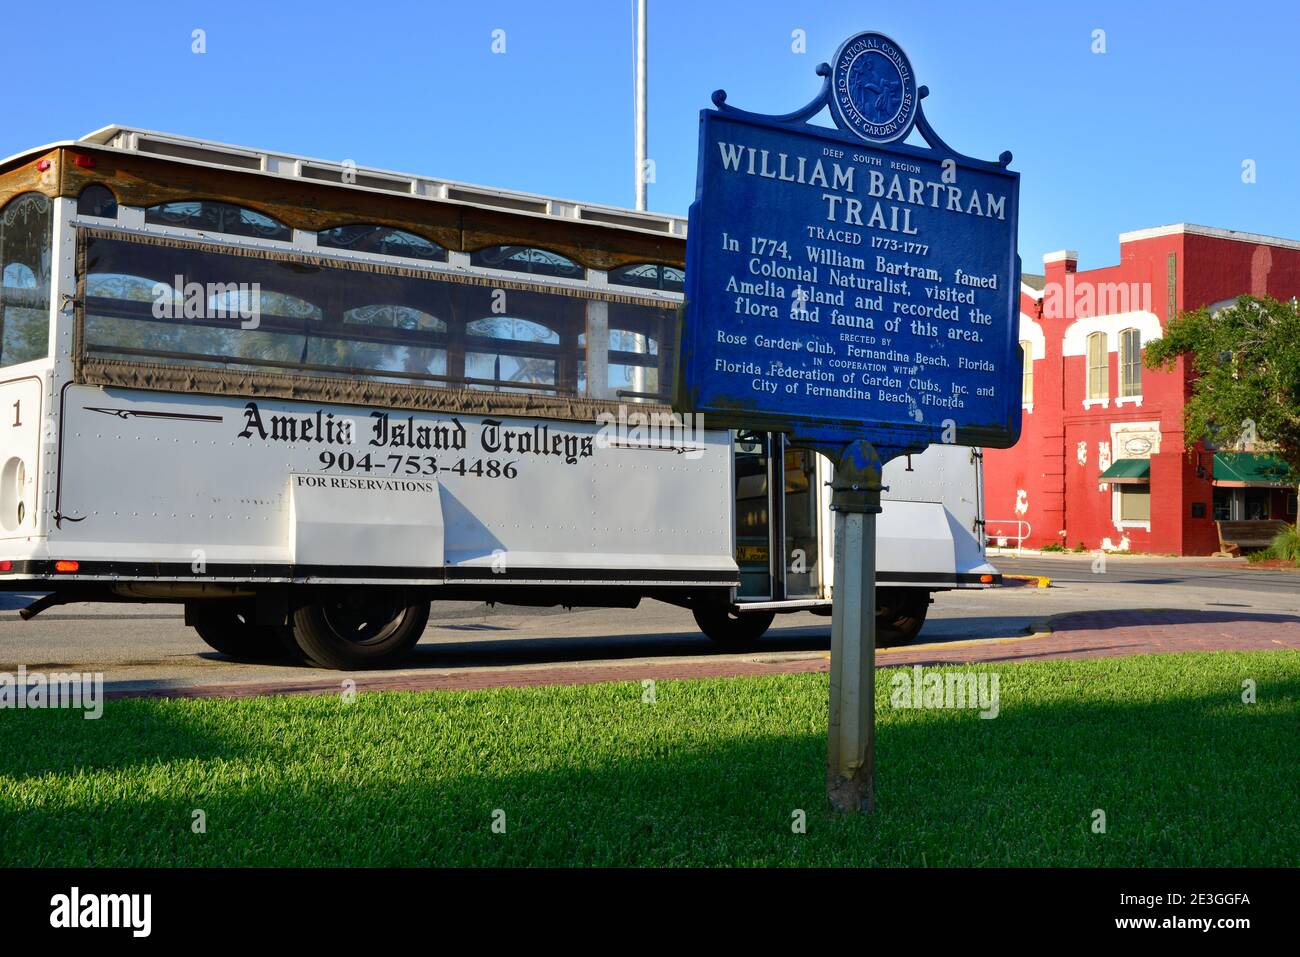 Un autobus Vintage tour dei Trolley dell'Isola di Amelia, nel quartiere storico di Fernandina Beach, con segno storico per il naturalista, William Bartram, FL Foto Stock